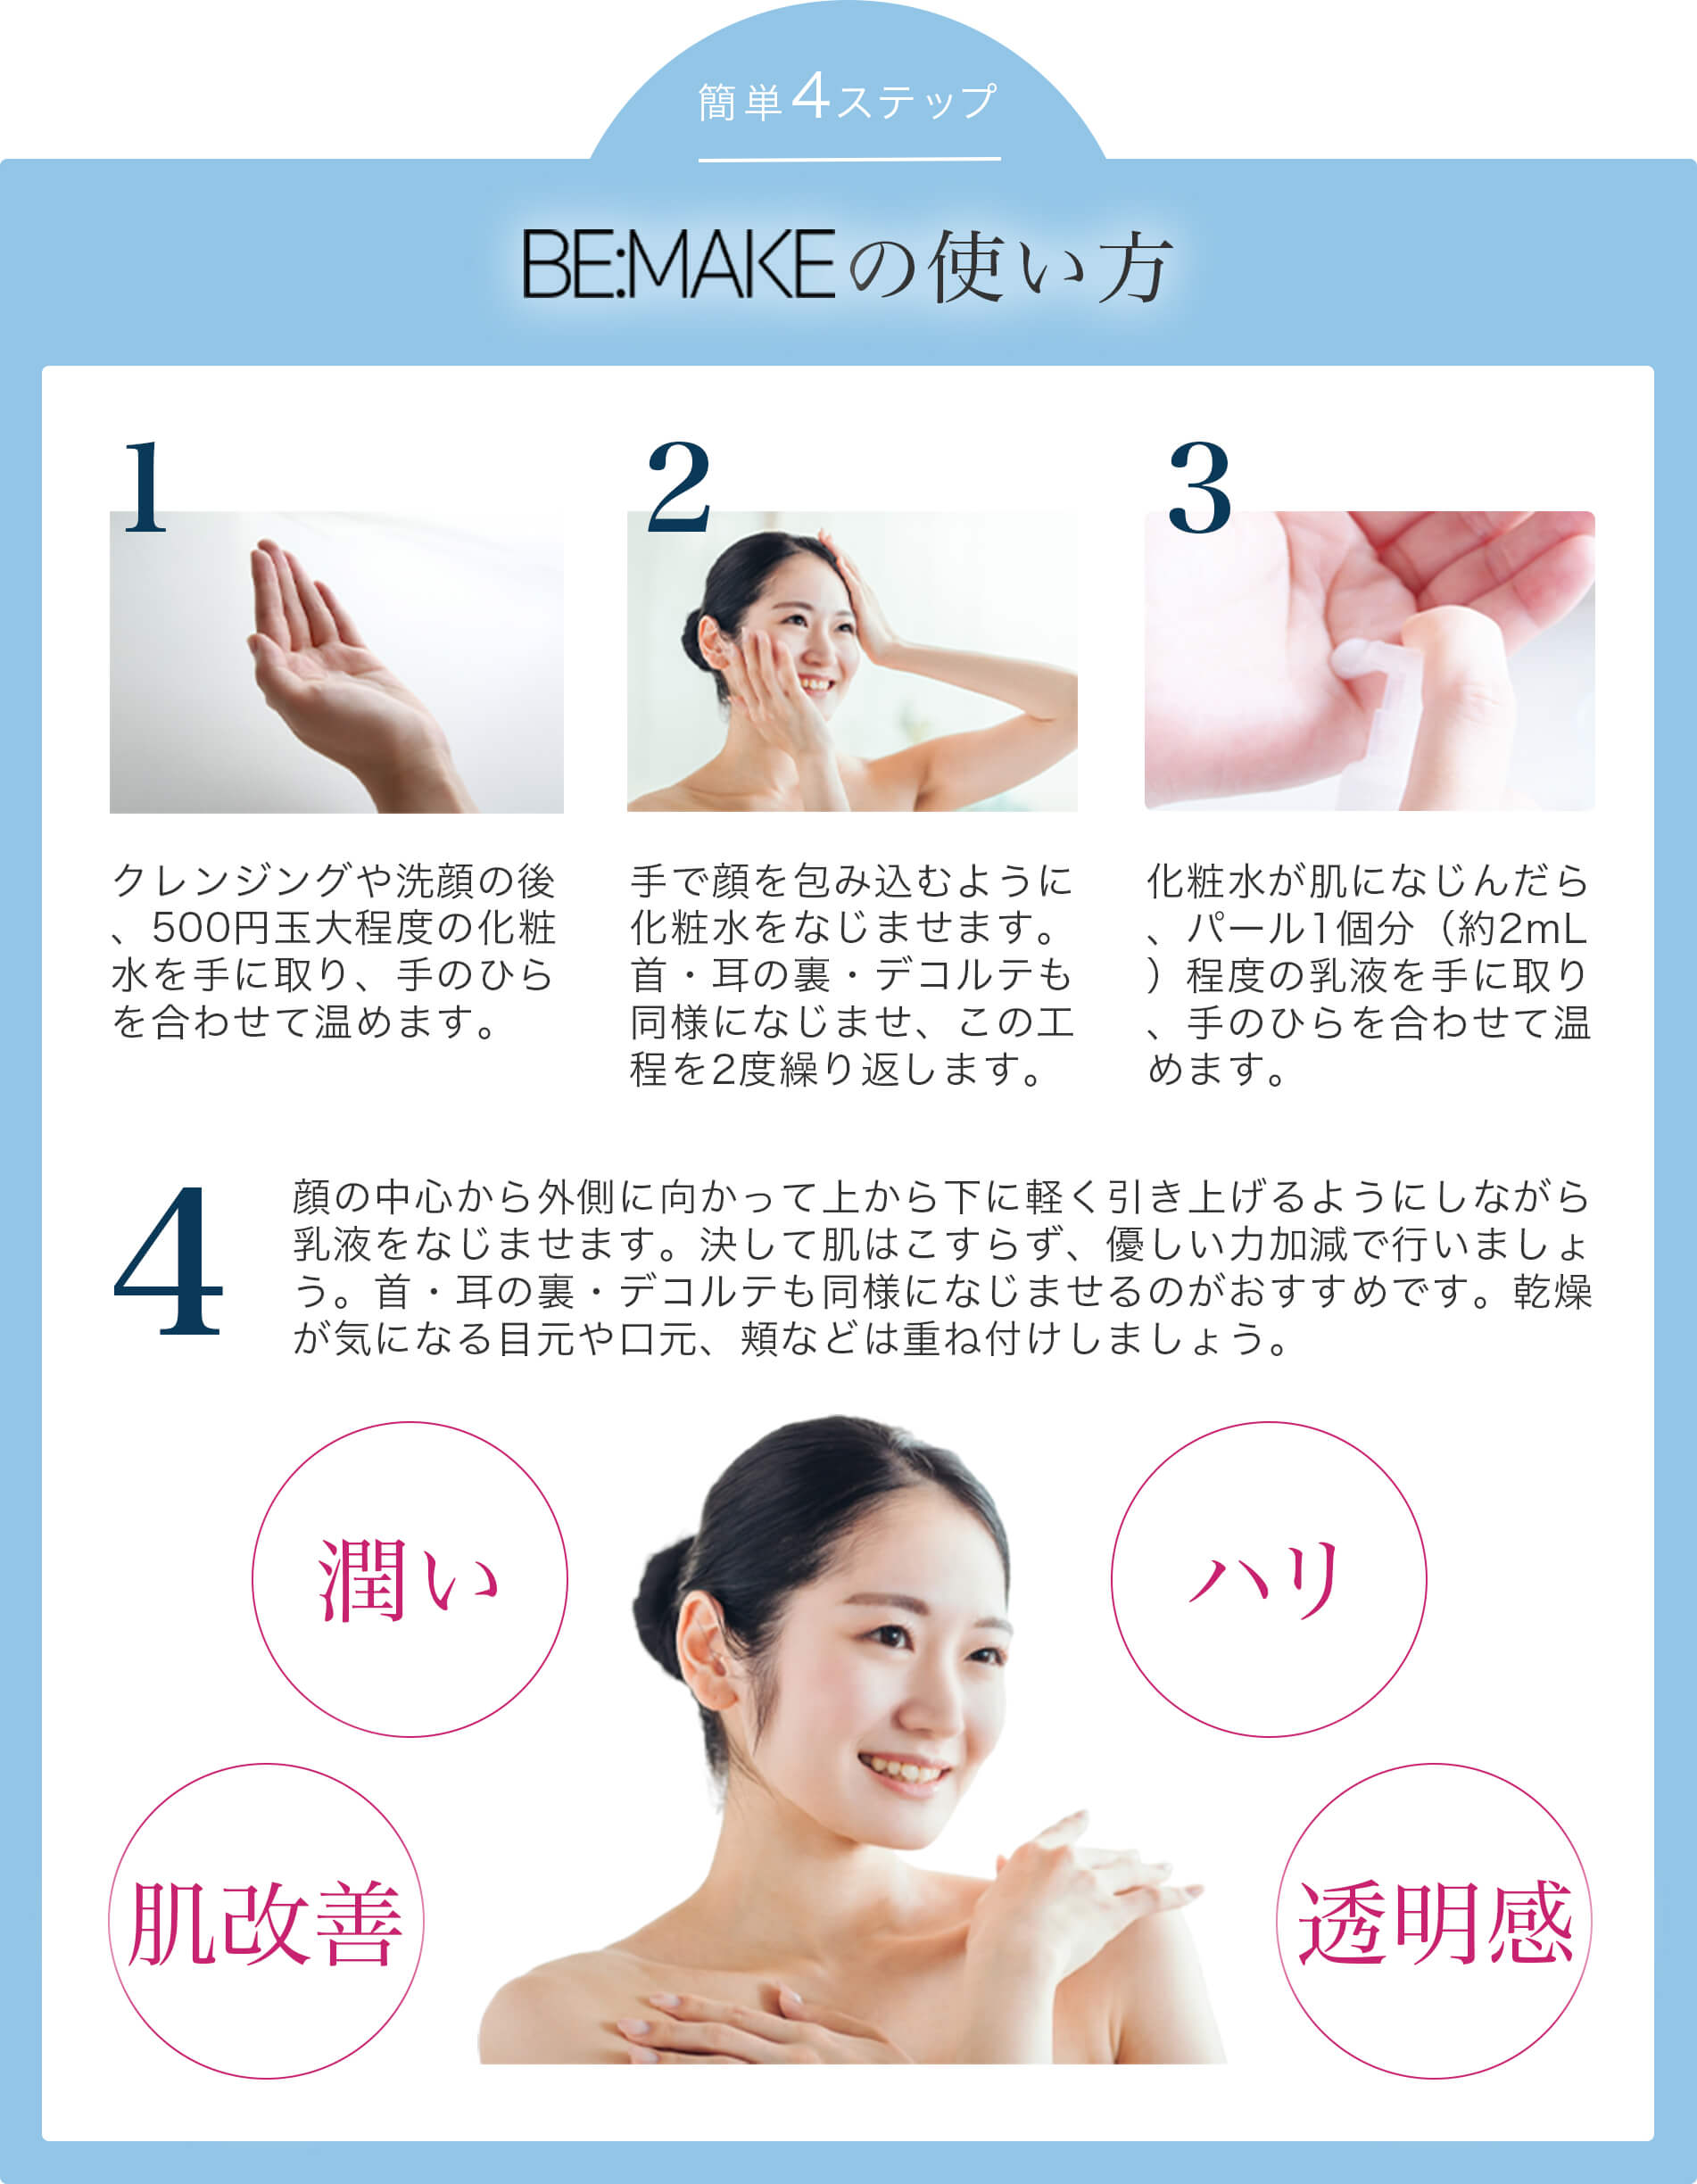 簡単4ステップ BE:MAKEの使い方 1.クレンジングや洗顔の後、500円玉大程度の化粧水を手に取り、手のひらを合わせて温めます。 2.手で顔を包み込むように化粧水をなじませます。首・耳の裏・デコルテも同様になじませ、この工程を2度繰り返します。 3.化粧水が肌になじんだら、パール1個分（約2mL）程度の乳液を手に取り、手のひらを合わせて温めます。 4.顔の中心から外側に向かって上から下に軽く引き上げるようにしながら乳液をなじませます。決して肌はこすらず、優しい力加減で行いましょう。首・耳の裏・デコルテも同様になじませるのがおすすめです。乾燥が気になる目元や口元、頬などは重ね付けしましょう。